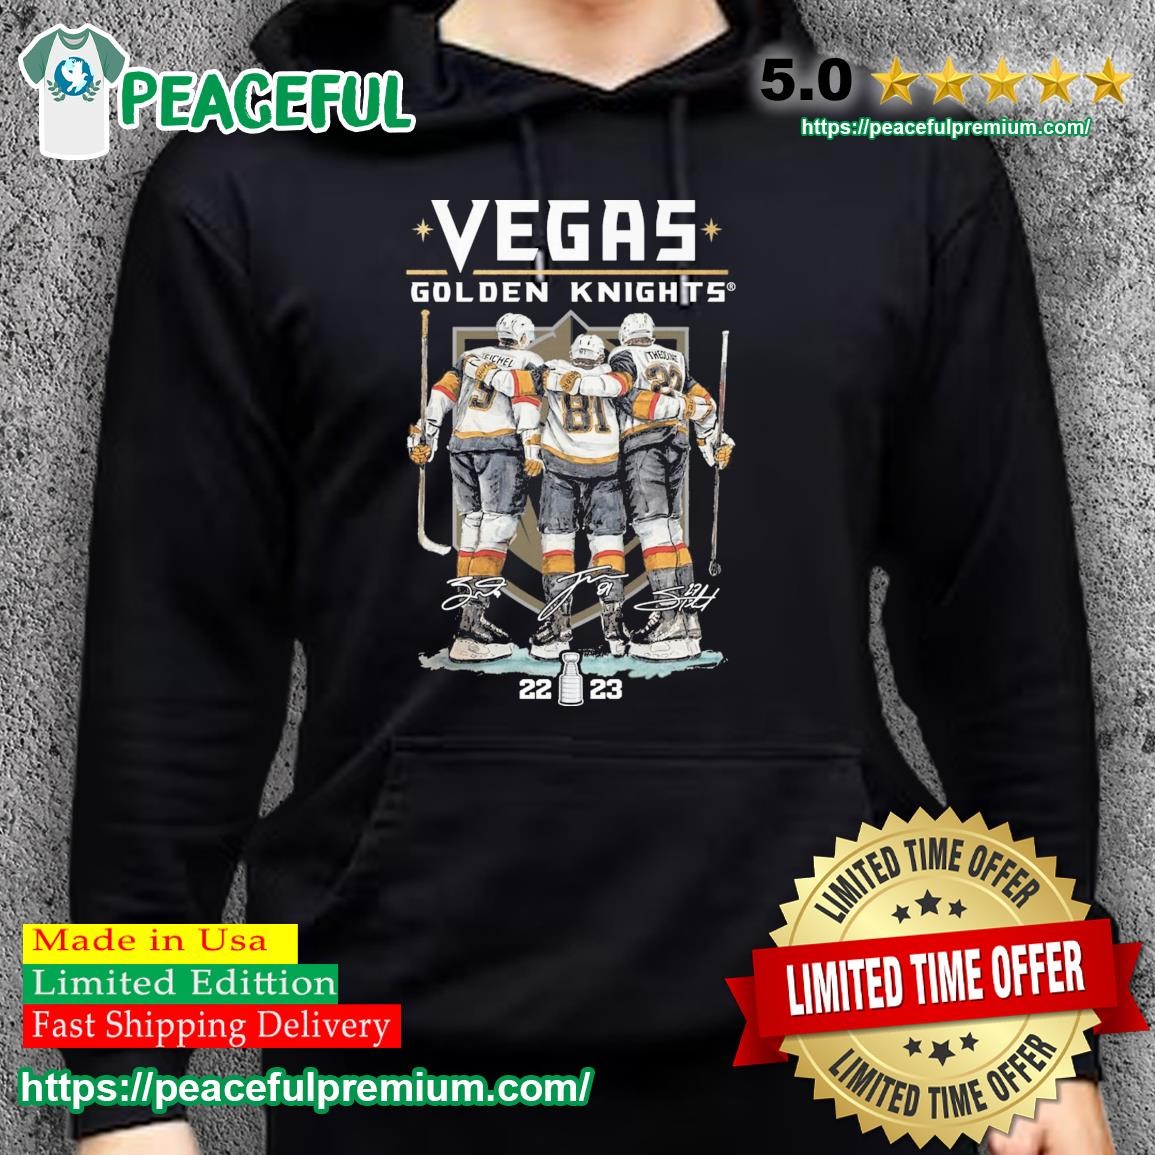 Jack Eichel Las Vegas hockey shirt, hoodie, sweater and long sleeve